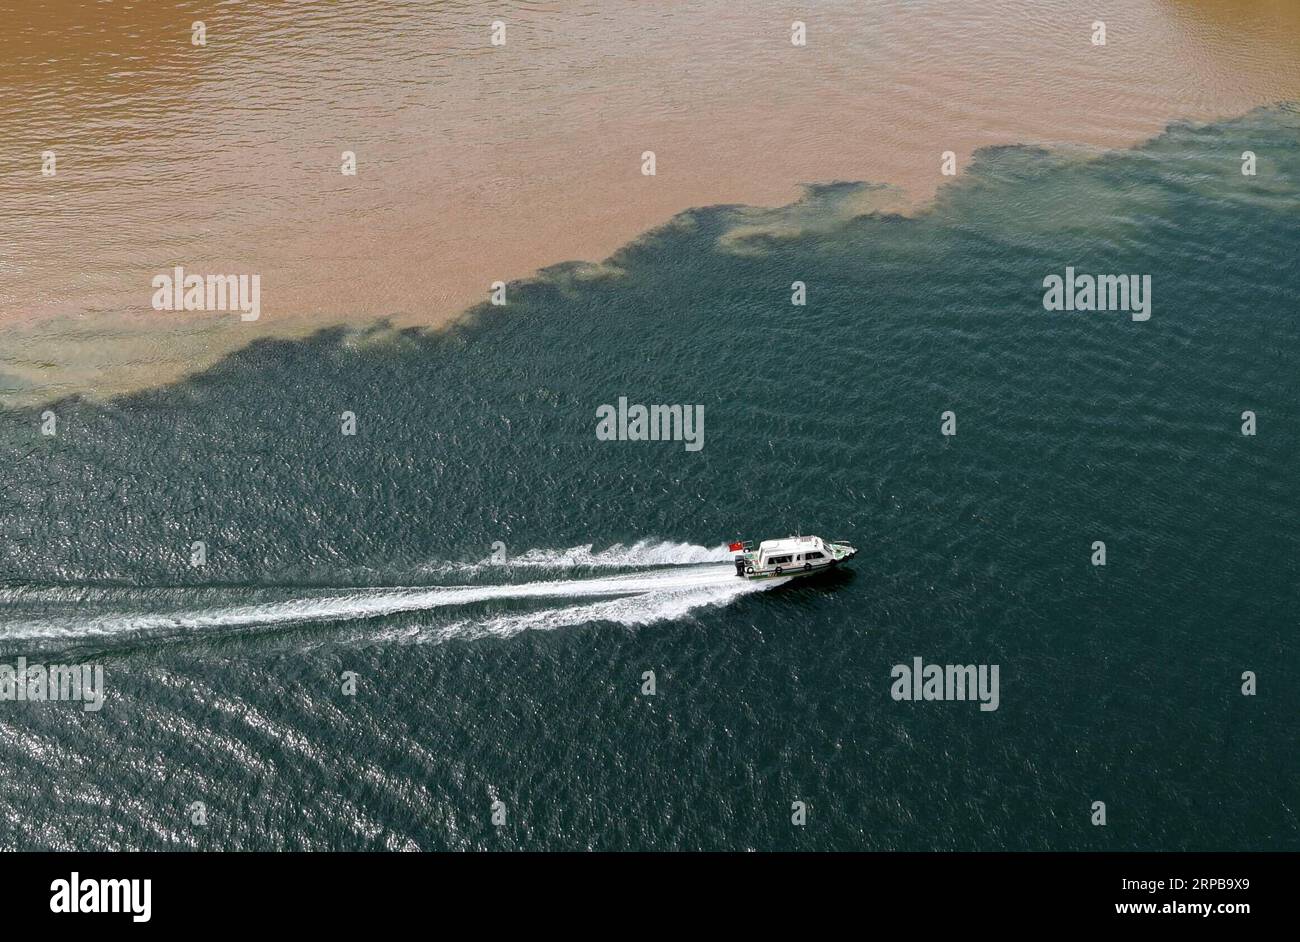 (190602) -- YONGJING, 2. Juni 2019 (Xinhua) -- Foto vom 2. Juni 2019 zeigt eine Yacht, die im Liujiaxia Reservoir im Yongjing County, nordwestlich der chinesischen Provinz Gansu segelt. Ein scharfer Farbkontrast zeigt sich deutlich, wenn sich zwei Flüsse, der seilfreie Yellow River und der dazugehörige Taohe River, der mit viel Schlamm und Sand fließt, im Liujiaxia Reservoir treffen, das weithin für sein klares Wasser bekannt ist. (Xinhua/Ma Ning) CHINA-GANSU-YONGJING-LIUJIAXIA STAUSEE-LANDSCHAFT (CN) PUBLICATIONxNOTxINxCHN Stockfoto